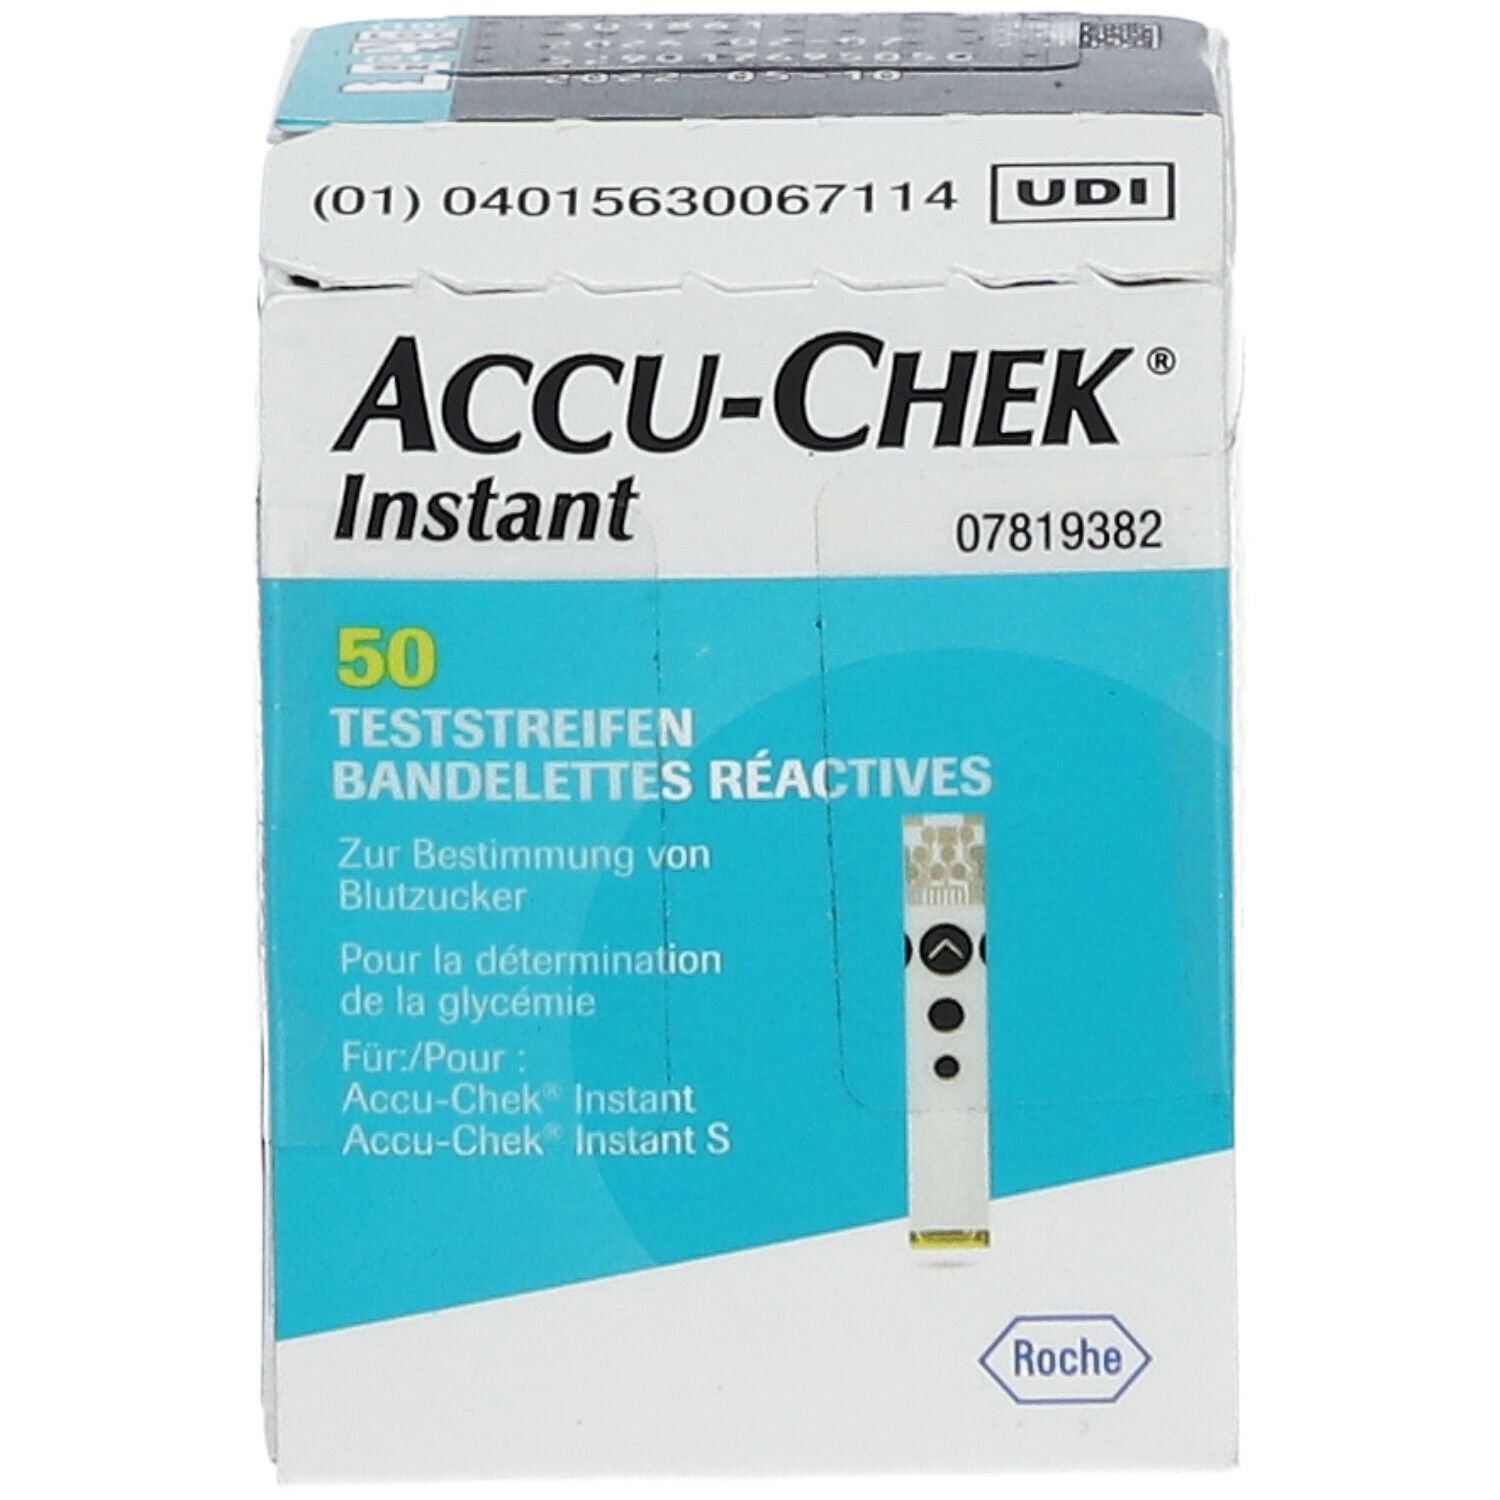 ACCU-CHEK® Instant Teststreifen